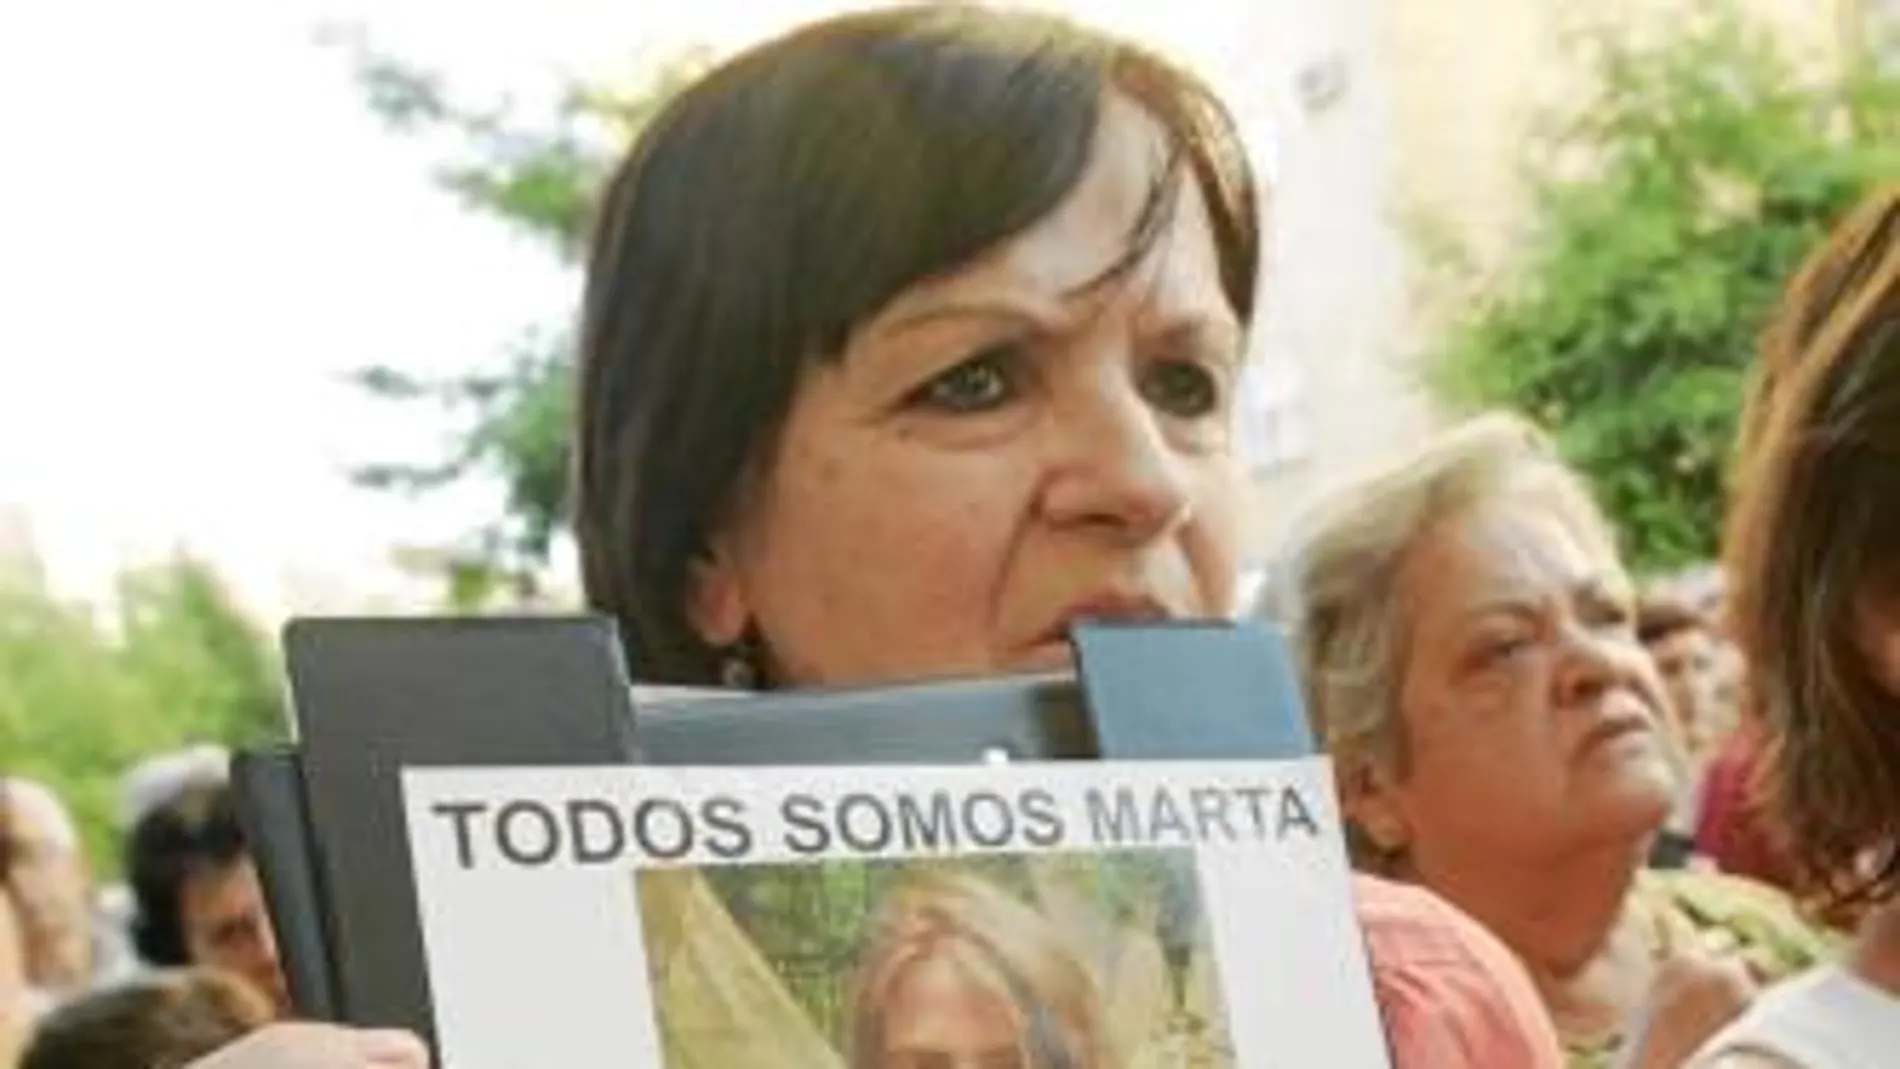 Catorce ciudades exigirán penas más duras para casos como el de Marta del Castillo